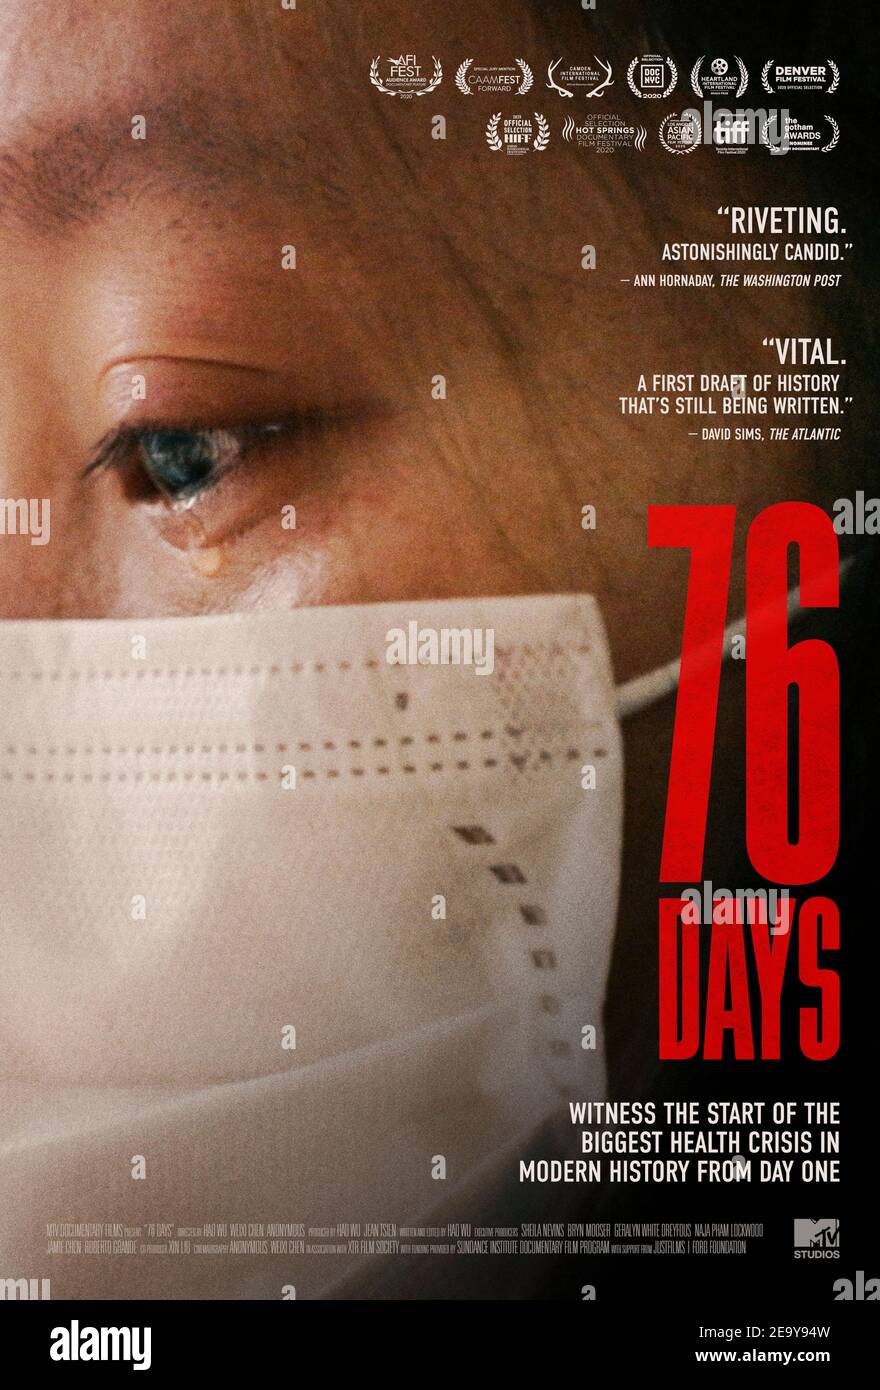 76 giorni (2020) regia di Weixi Chen e Hao Wu e protagonista . Documentario sui pazienti e sui professionisti medici di prima linea che hanno combattuto la pandemia COVID-19 durante i primi giorni a Wuhan, in Cina. Foto Stock